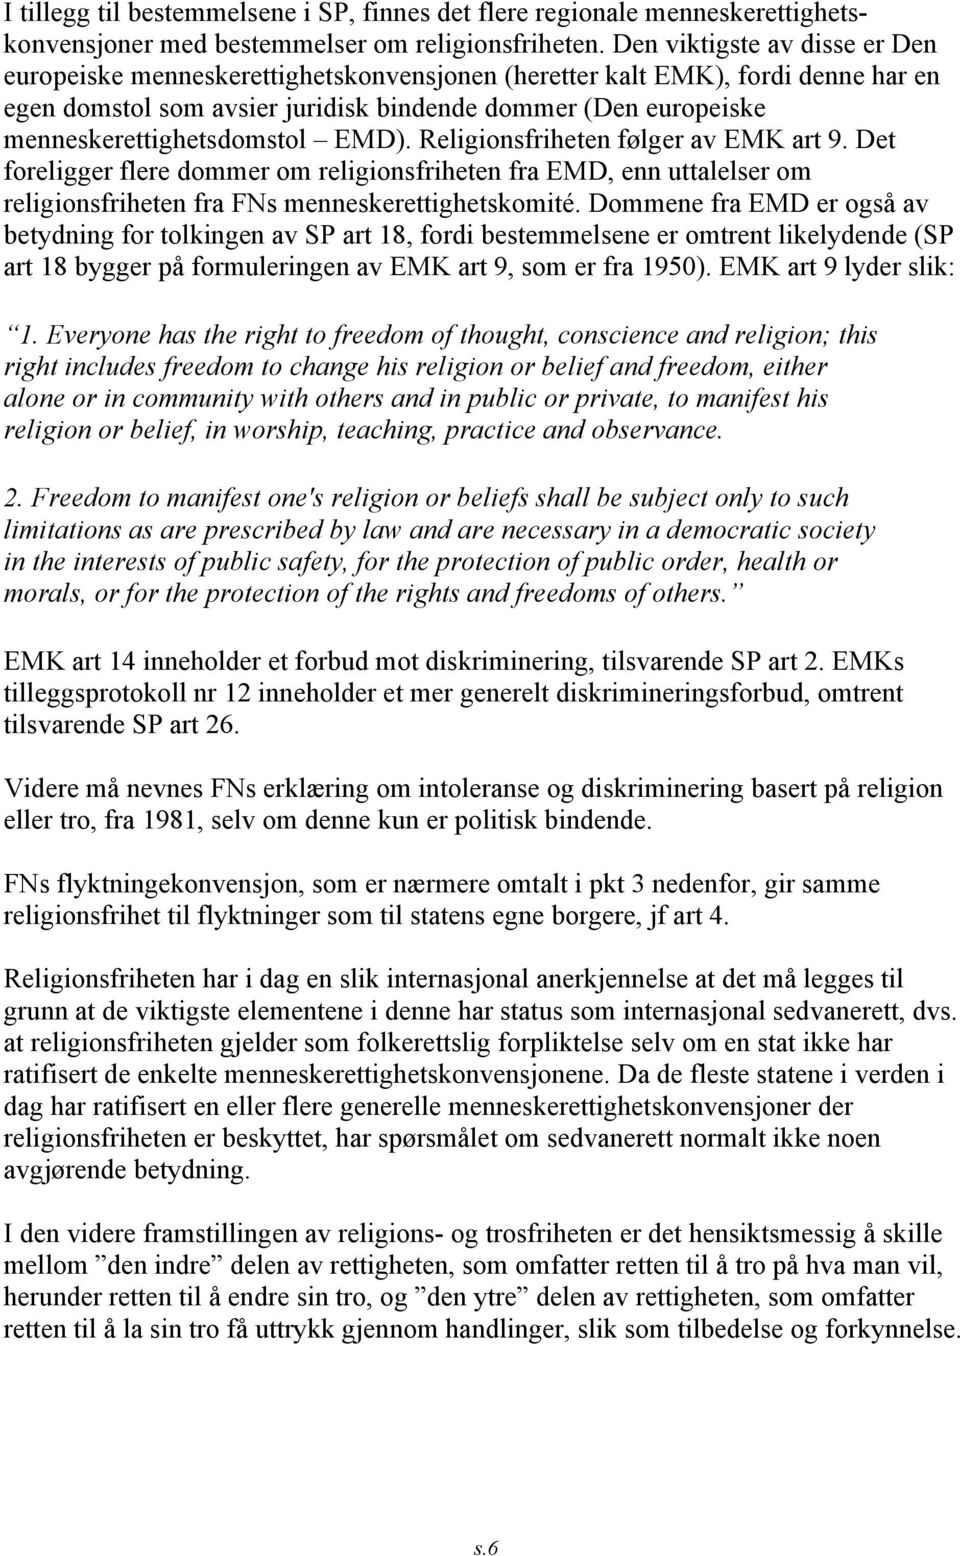 menneskerettighetsdomstol EMD). Religionsfriheten følger av EMK art 9. Det foreligger flere dommer om religionsfriheten fra EMD, enn uttalelser om religionsfriheten fra FNs menneskerettighetskomité.